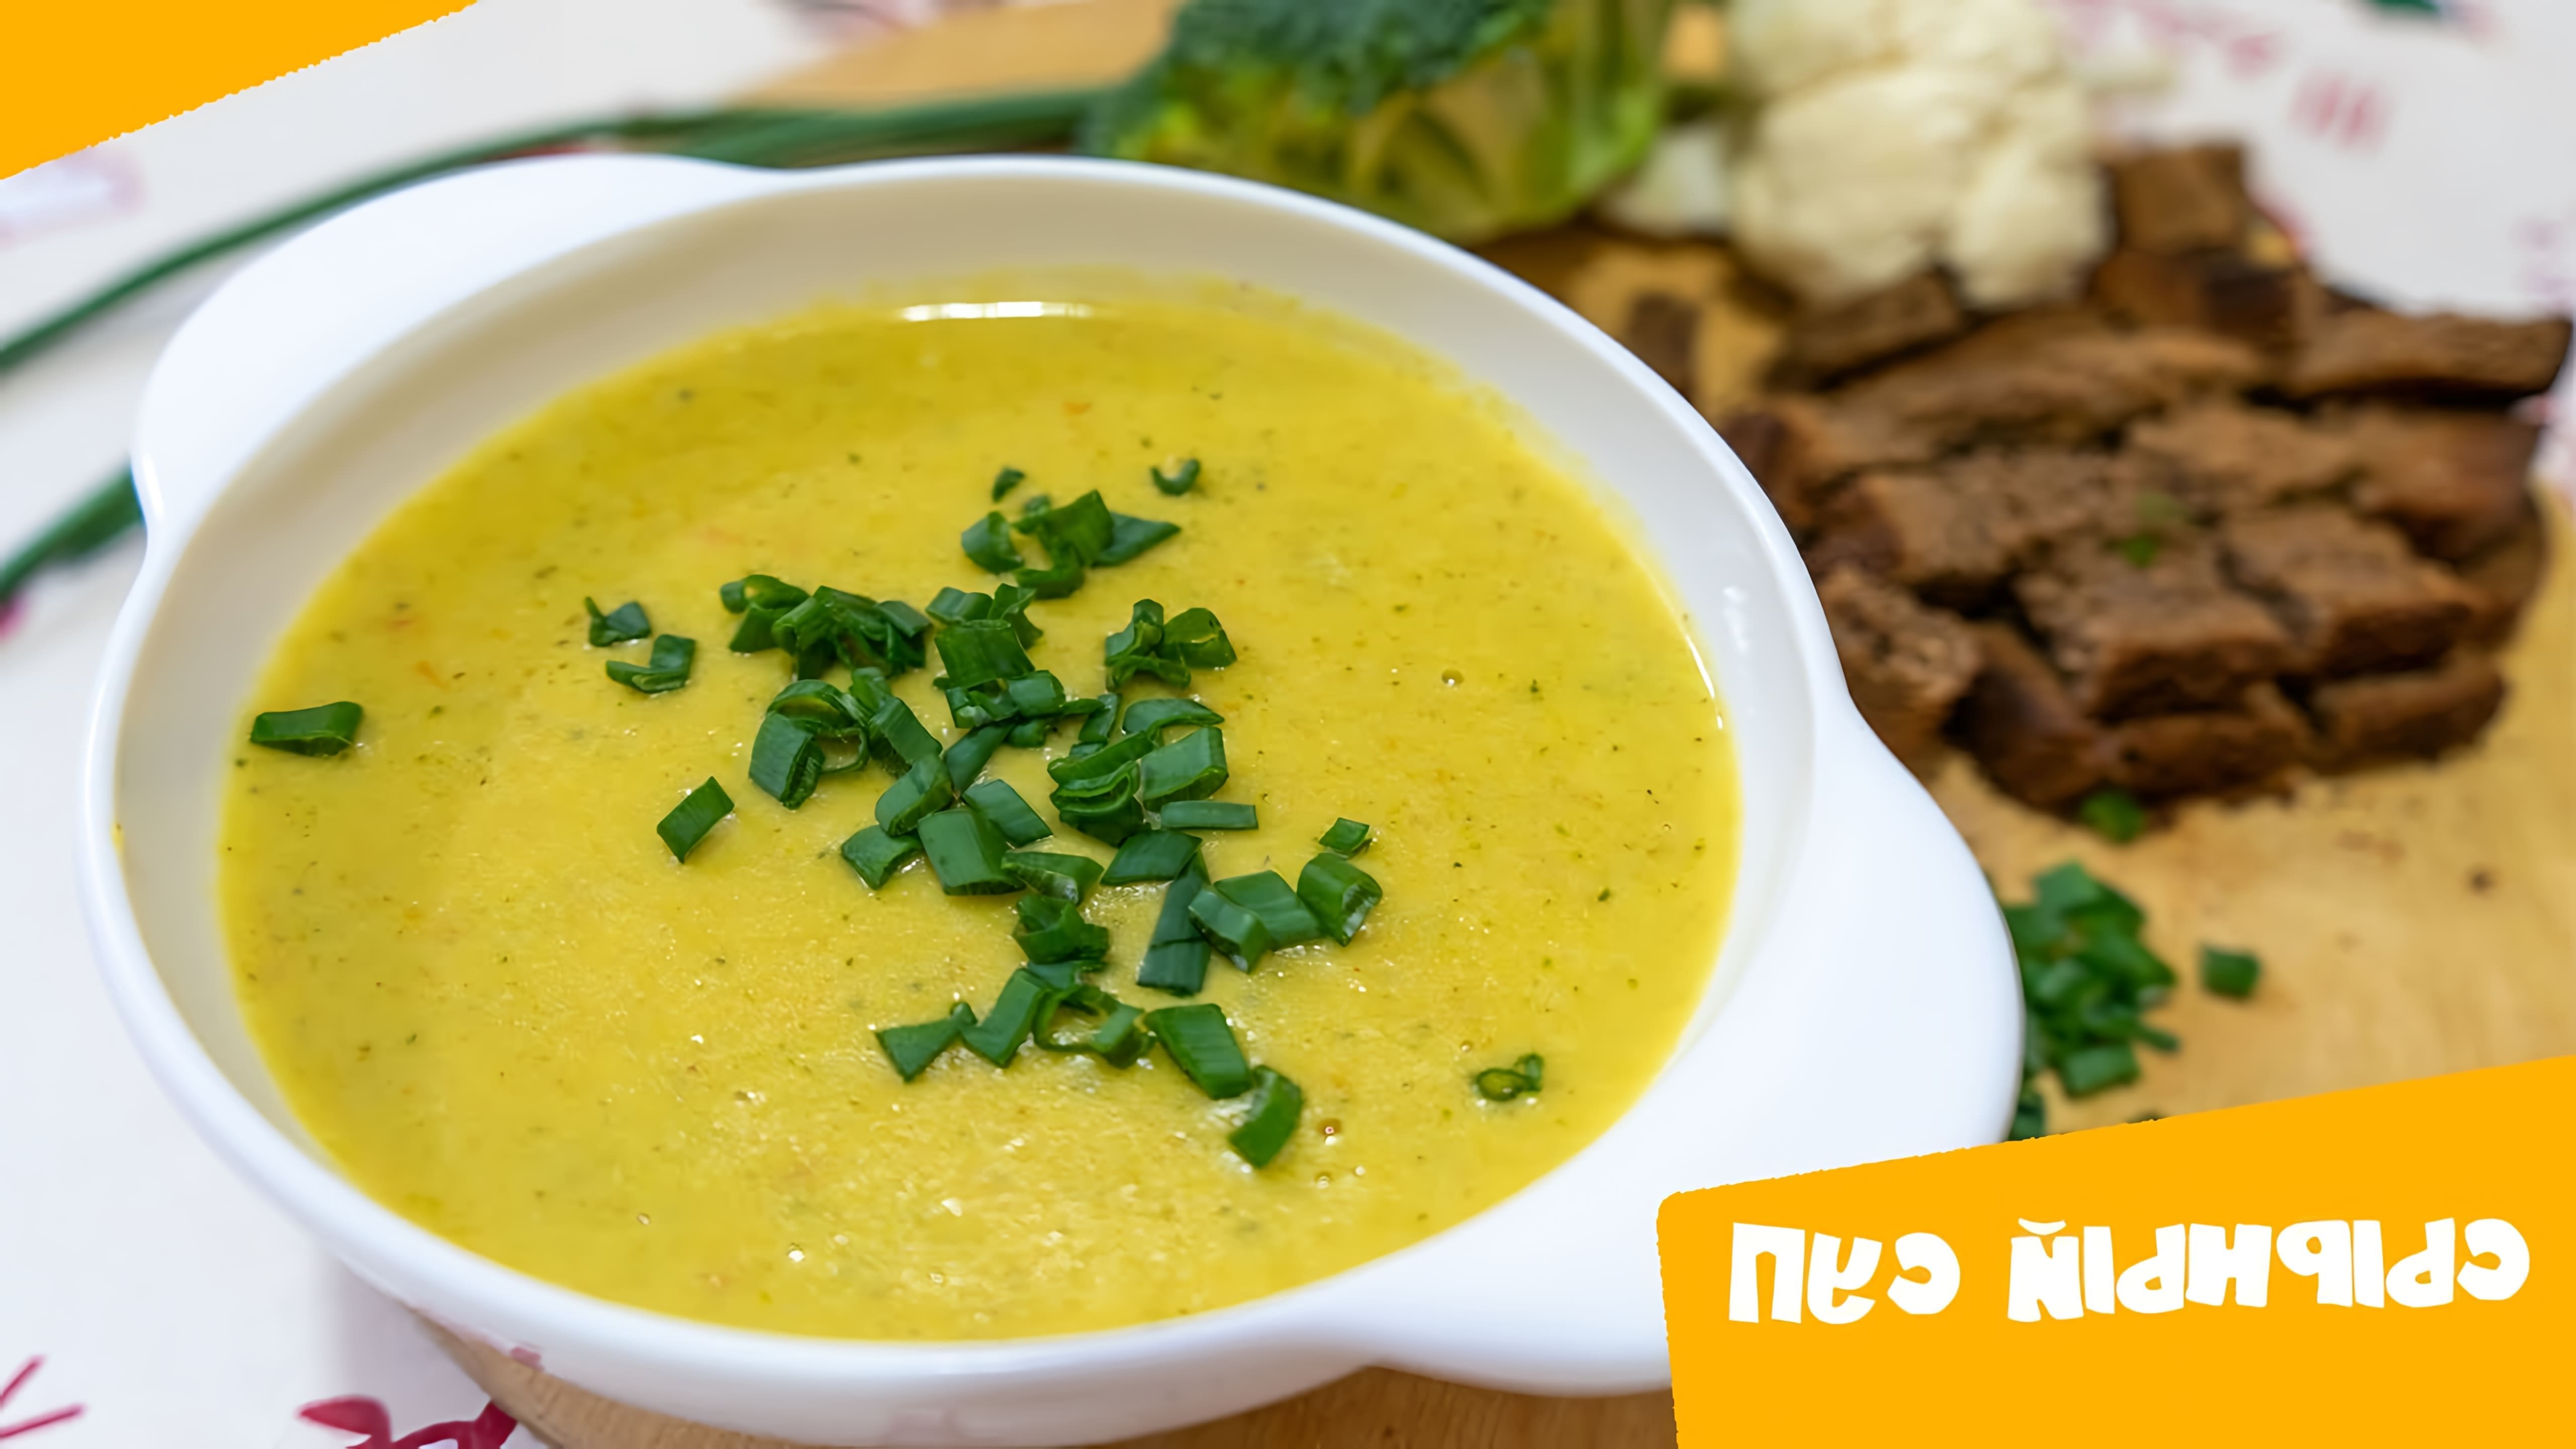 В данном видео демонстрируется процесс приготовления сырного крем-супа с брокколи и цветной капустой